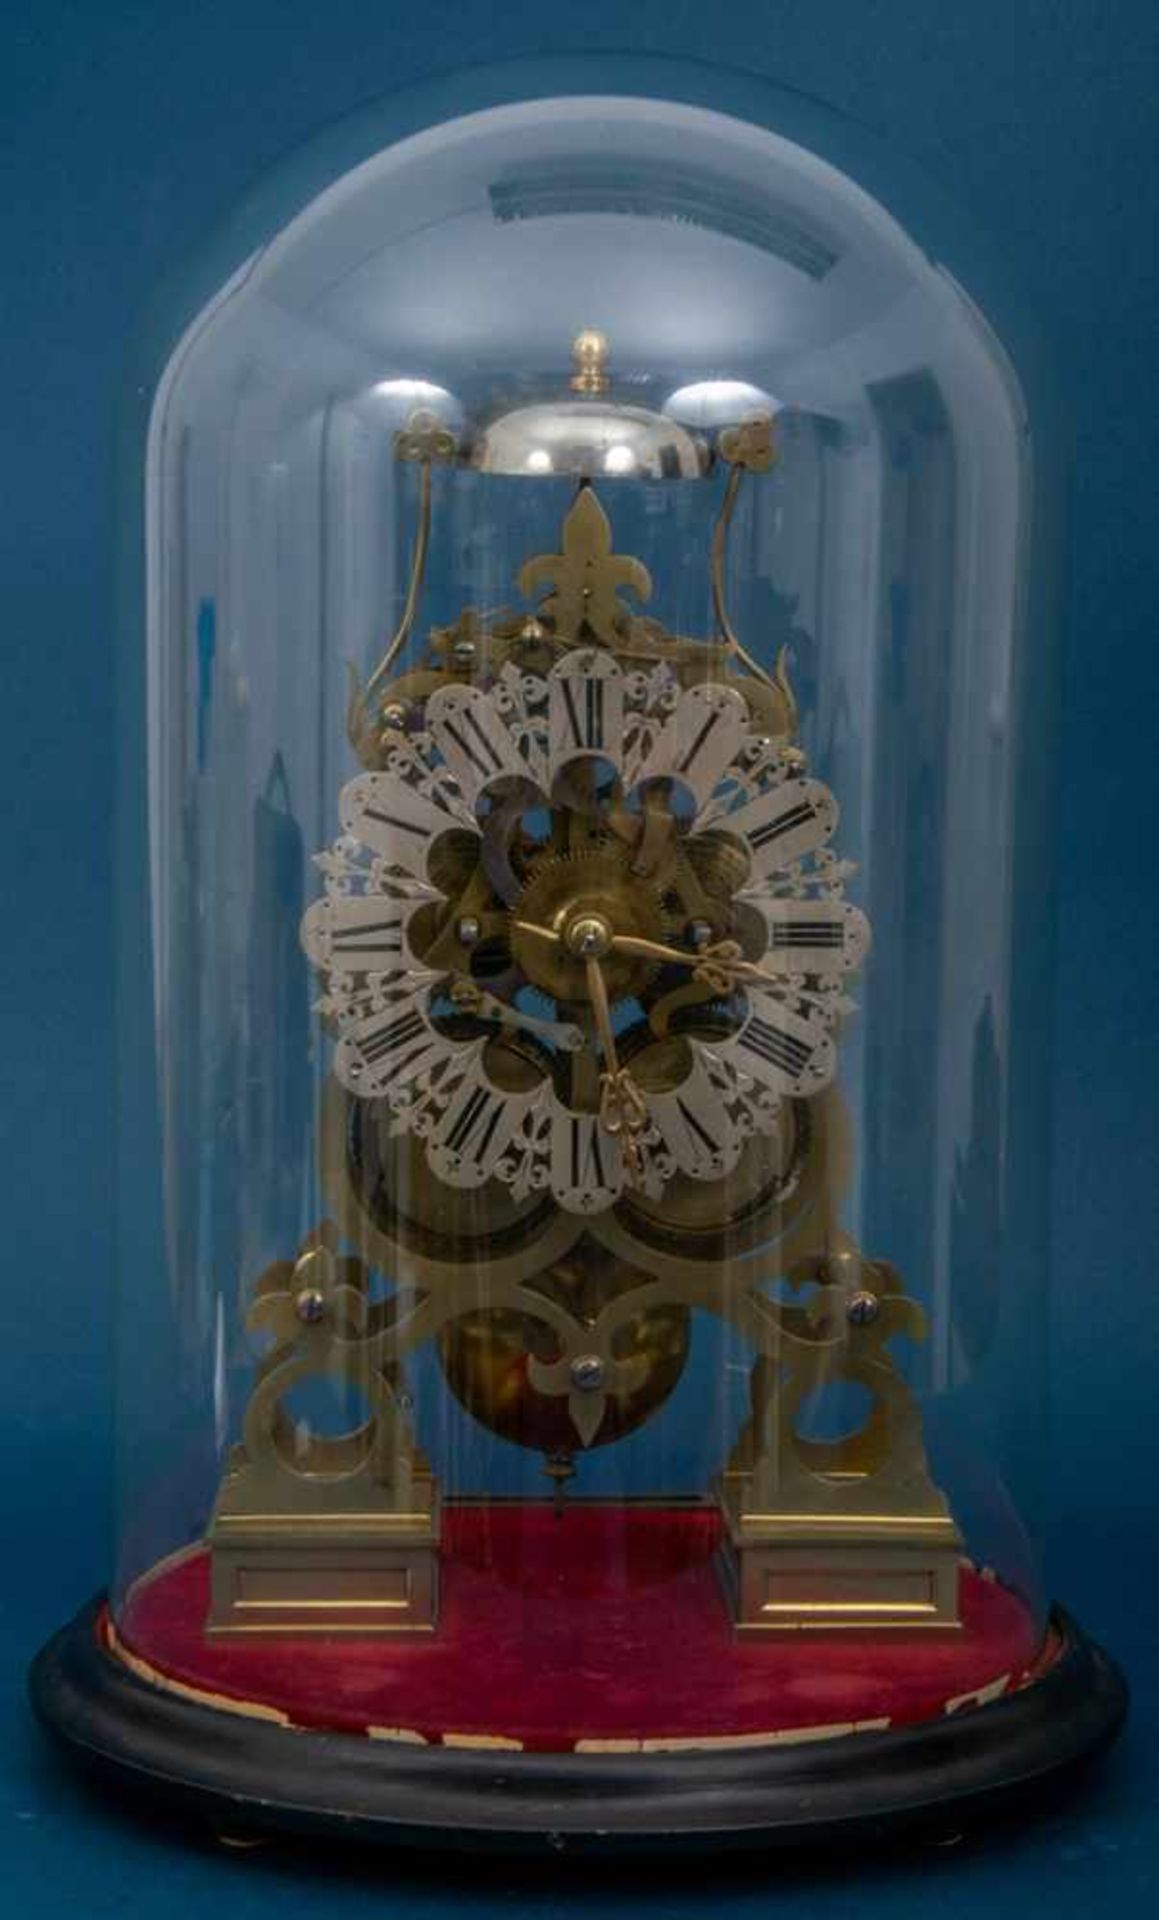 Englische Skelettuhr des 19. Jhds., unter Glassturz, Halbstundenschlag auf obenliegender Glocke.